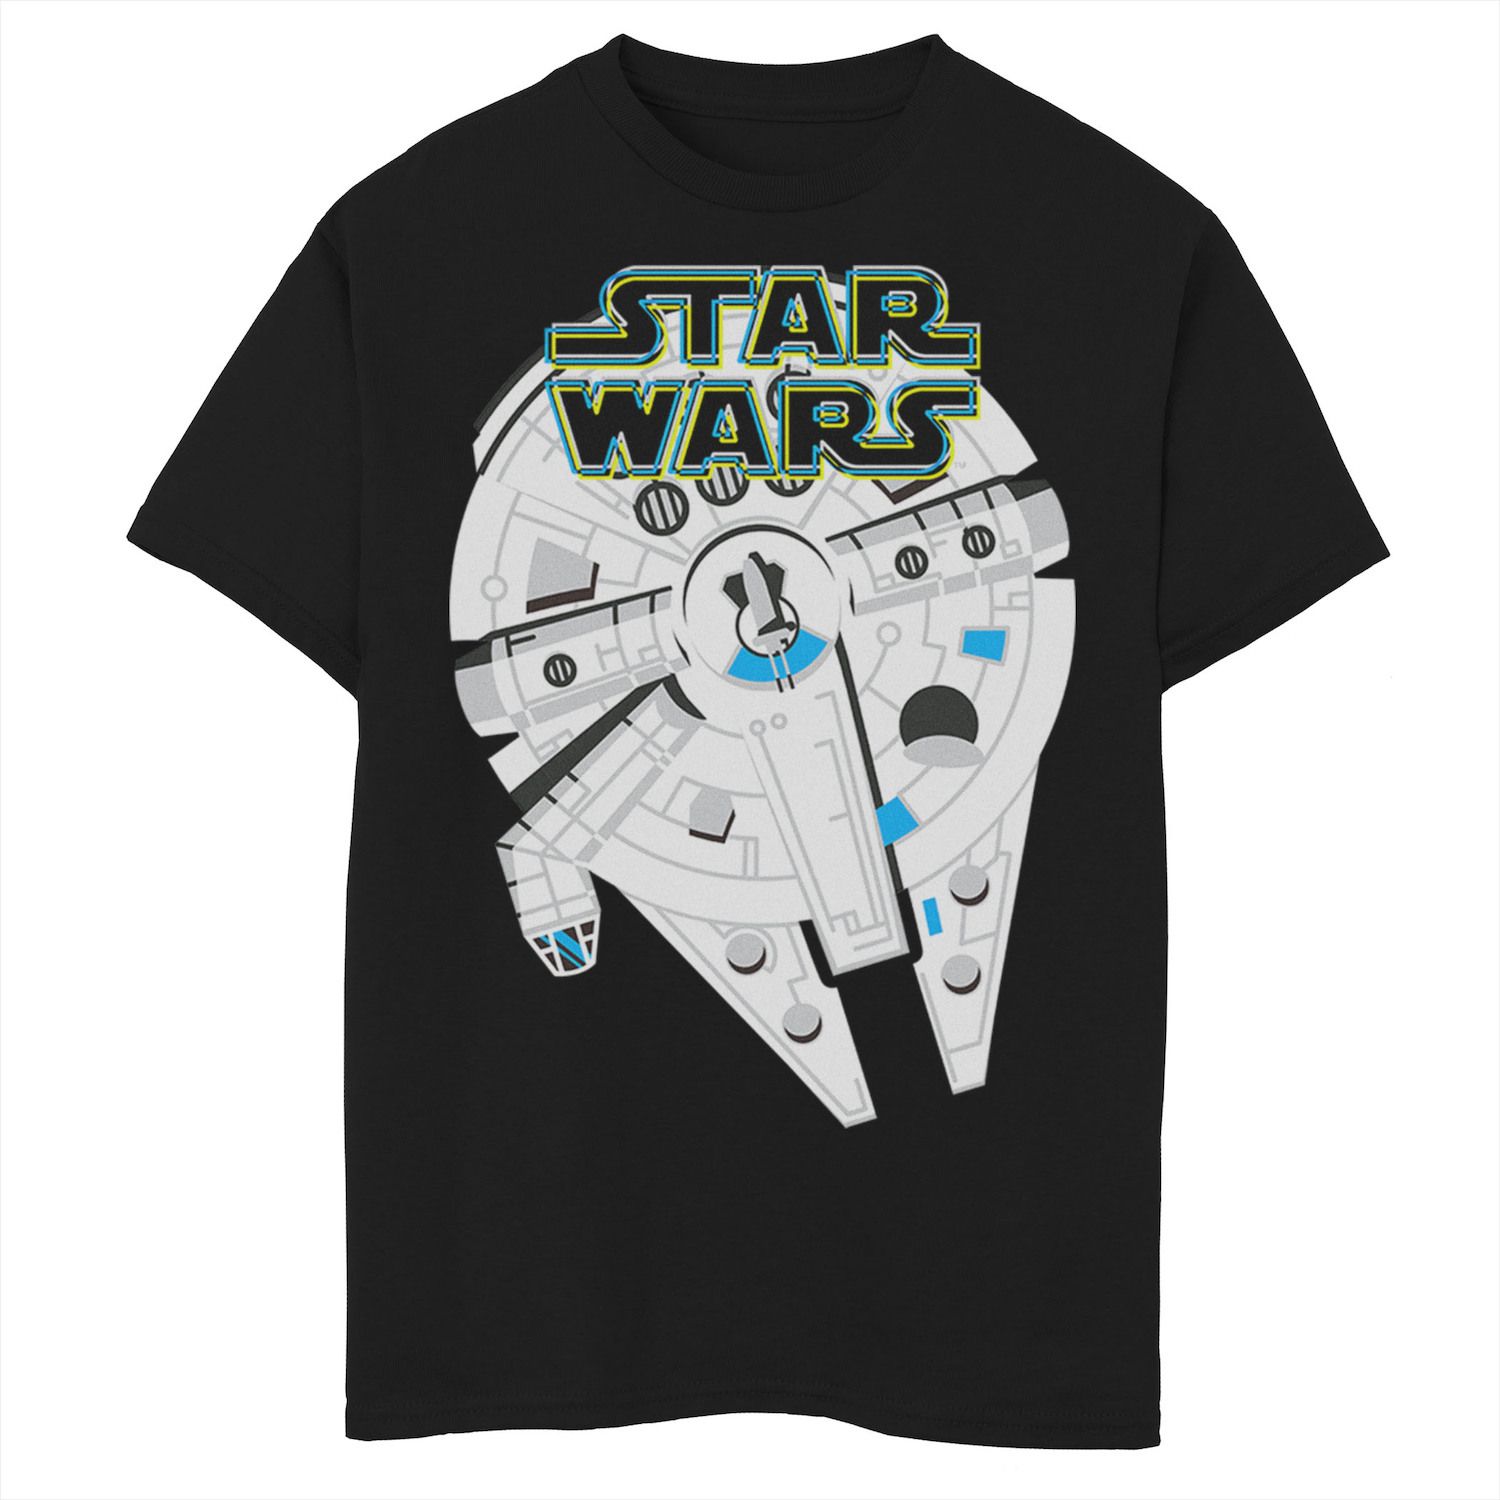 Футболка с простым графическим рисунком для мальчиков 8–20 лет, «Сокол тысячелетия», неоновые цвета Star Wars футболка с рисунком сокол тысячелетия для мальчиков 8–20 лет star wars